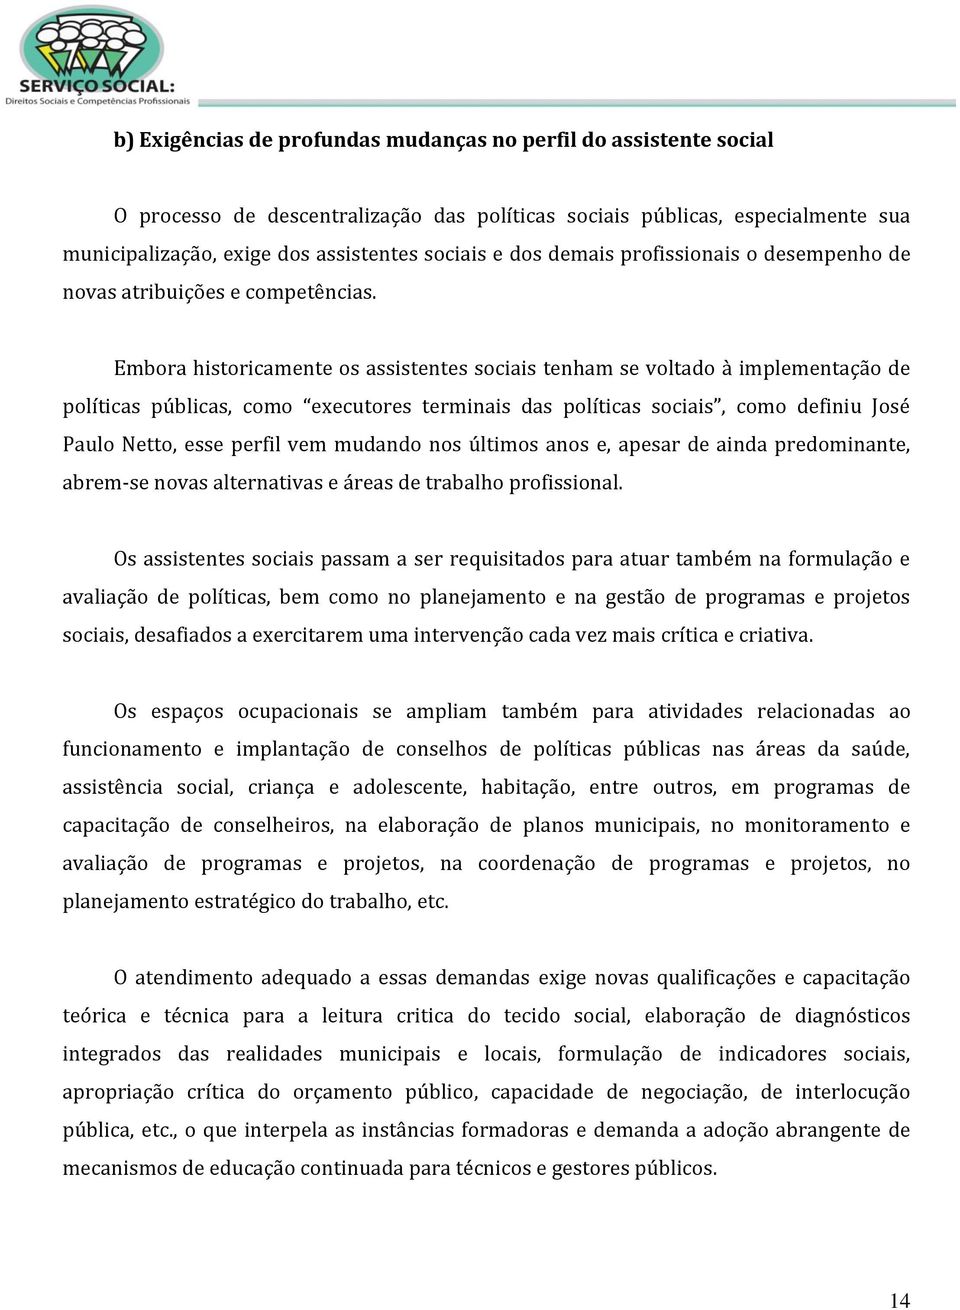 Embora historicamente os assistentes sociais tenham se voltado à implementação de políticas públicas, como executores terminais das políticas sociais, como definiu José Paulo Netto, esse perfil vem